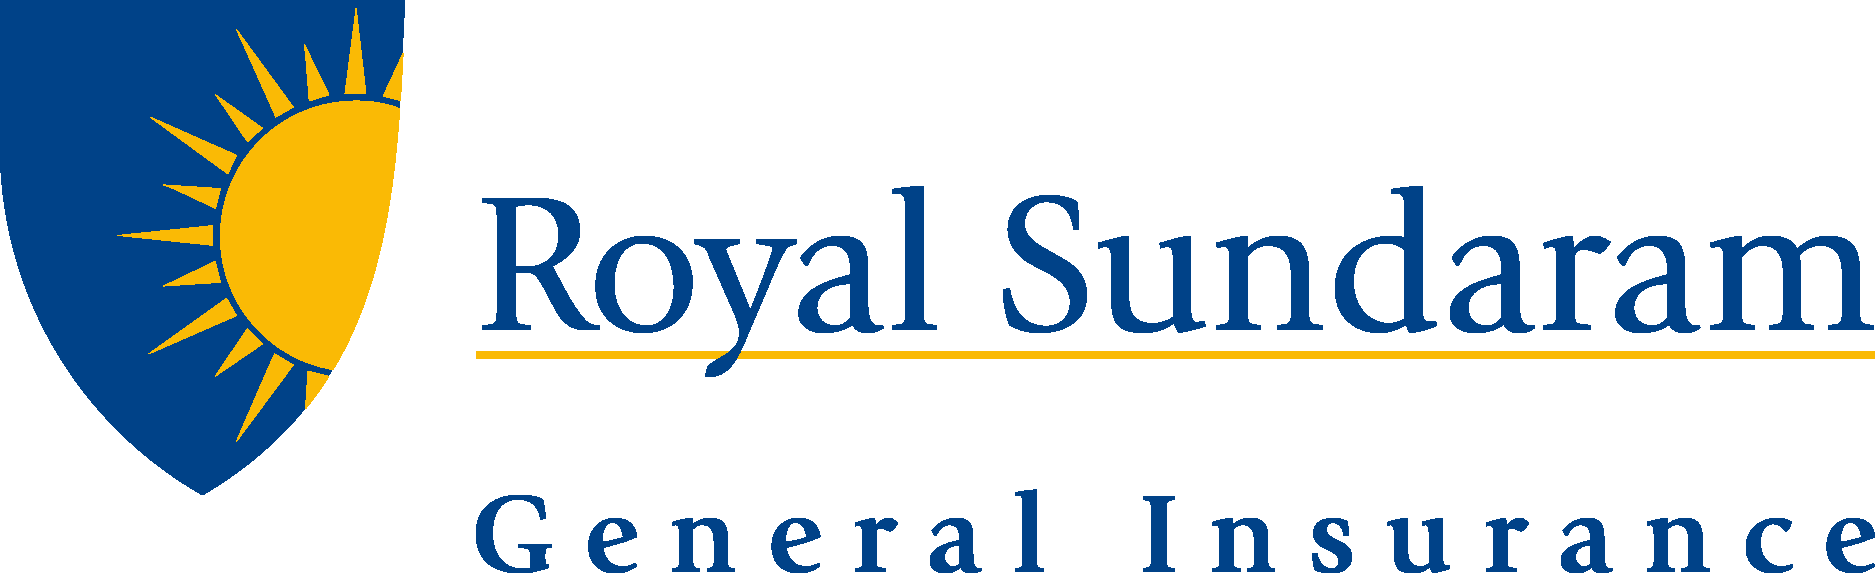 royal sundaram health insurance कैसी कंपनी है क्या क्लैम देती है - YouTube